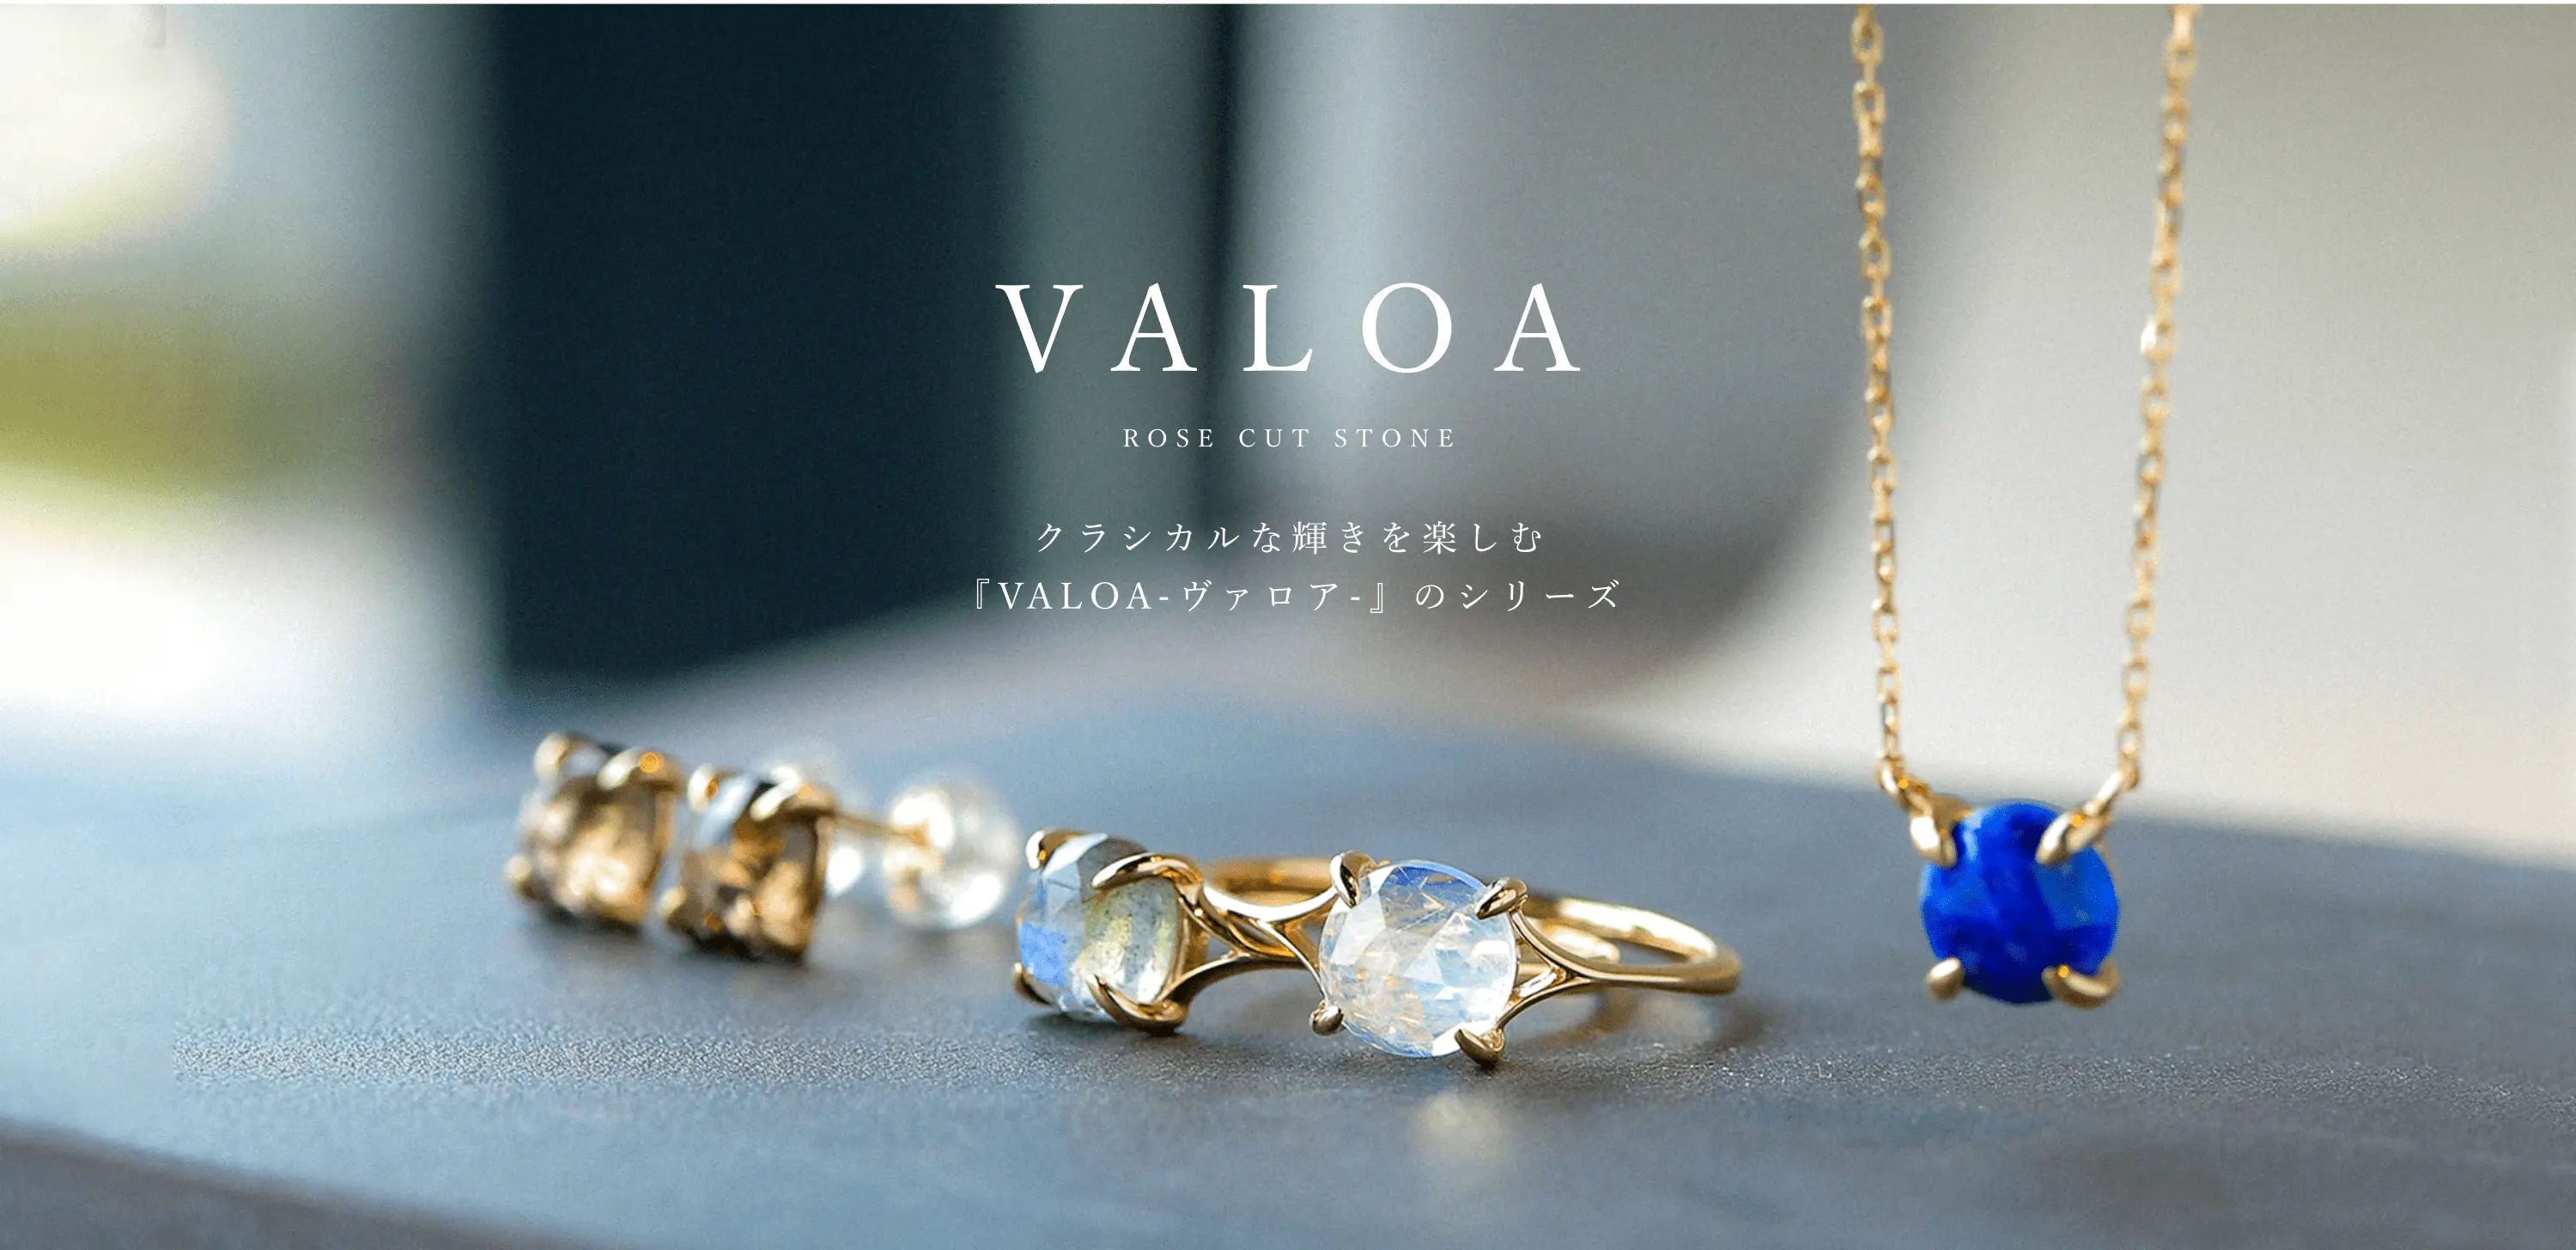 クラシカルな輝きを楽しむ「VALOA-ヴァロア-」のシリーズ